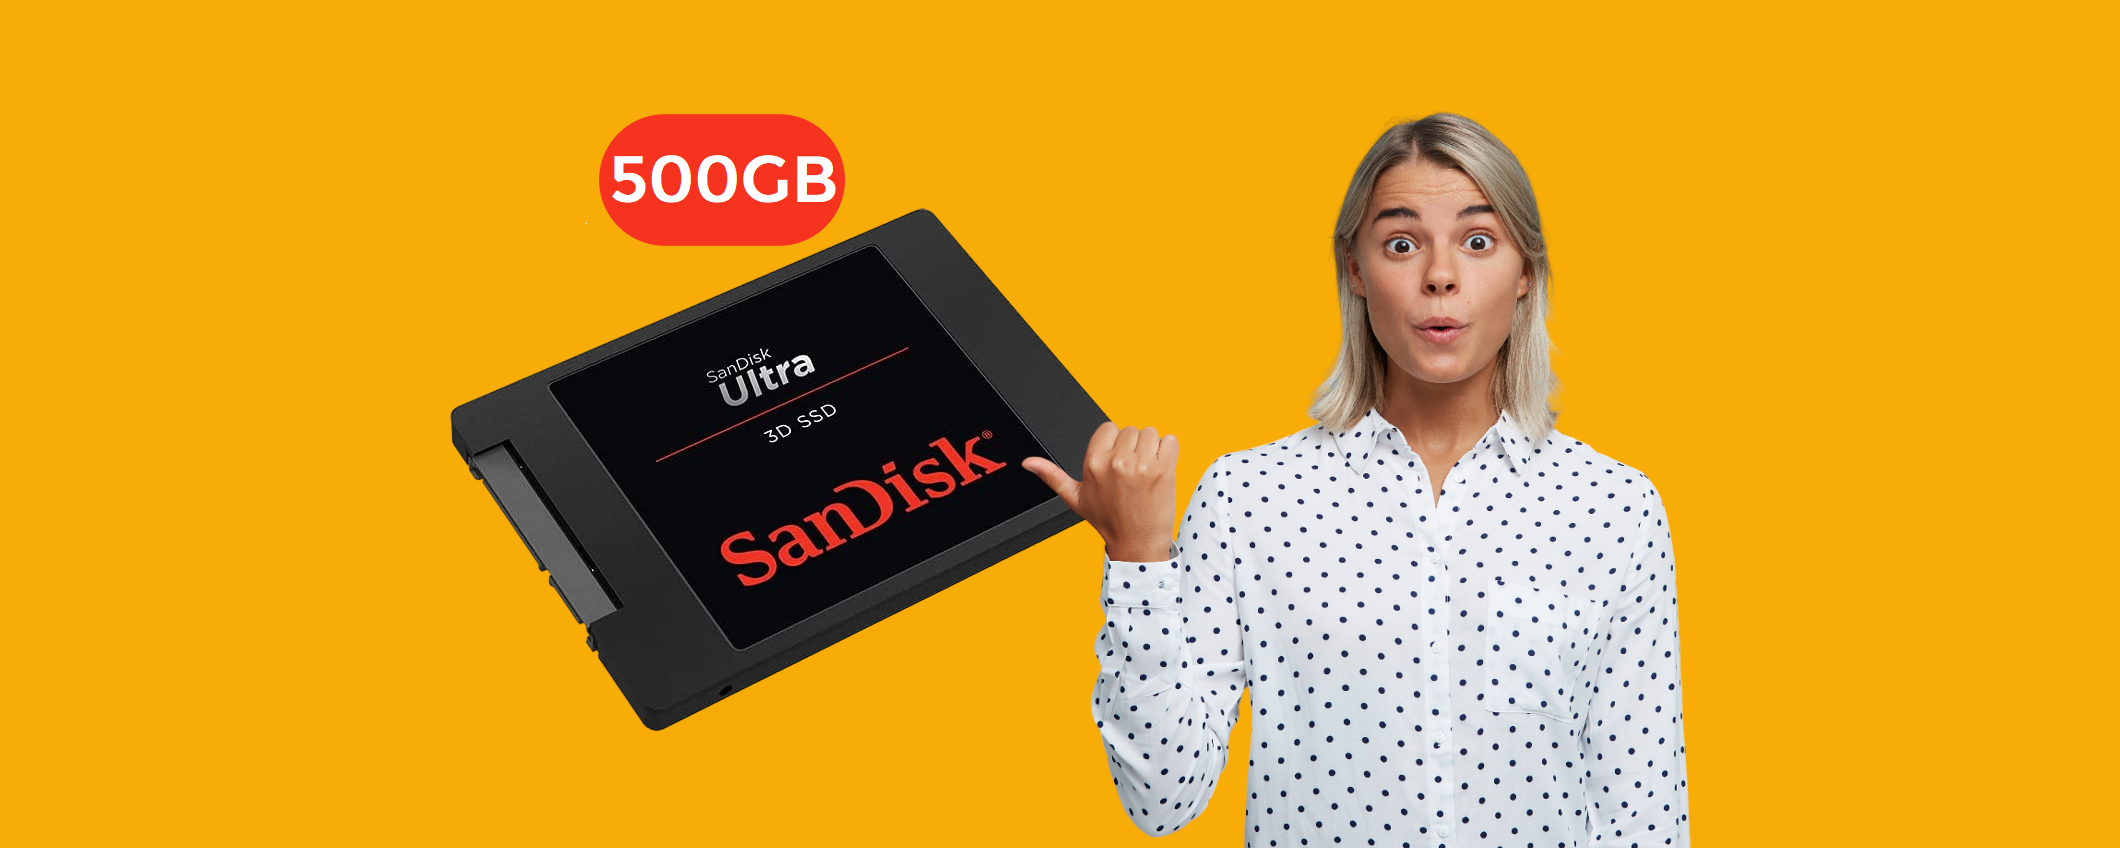 SSD SanDisk 500GB: con appena 74€ fai spiccare il volo al tuo computer